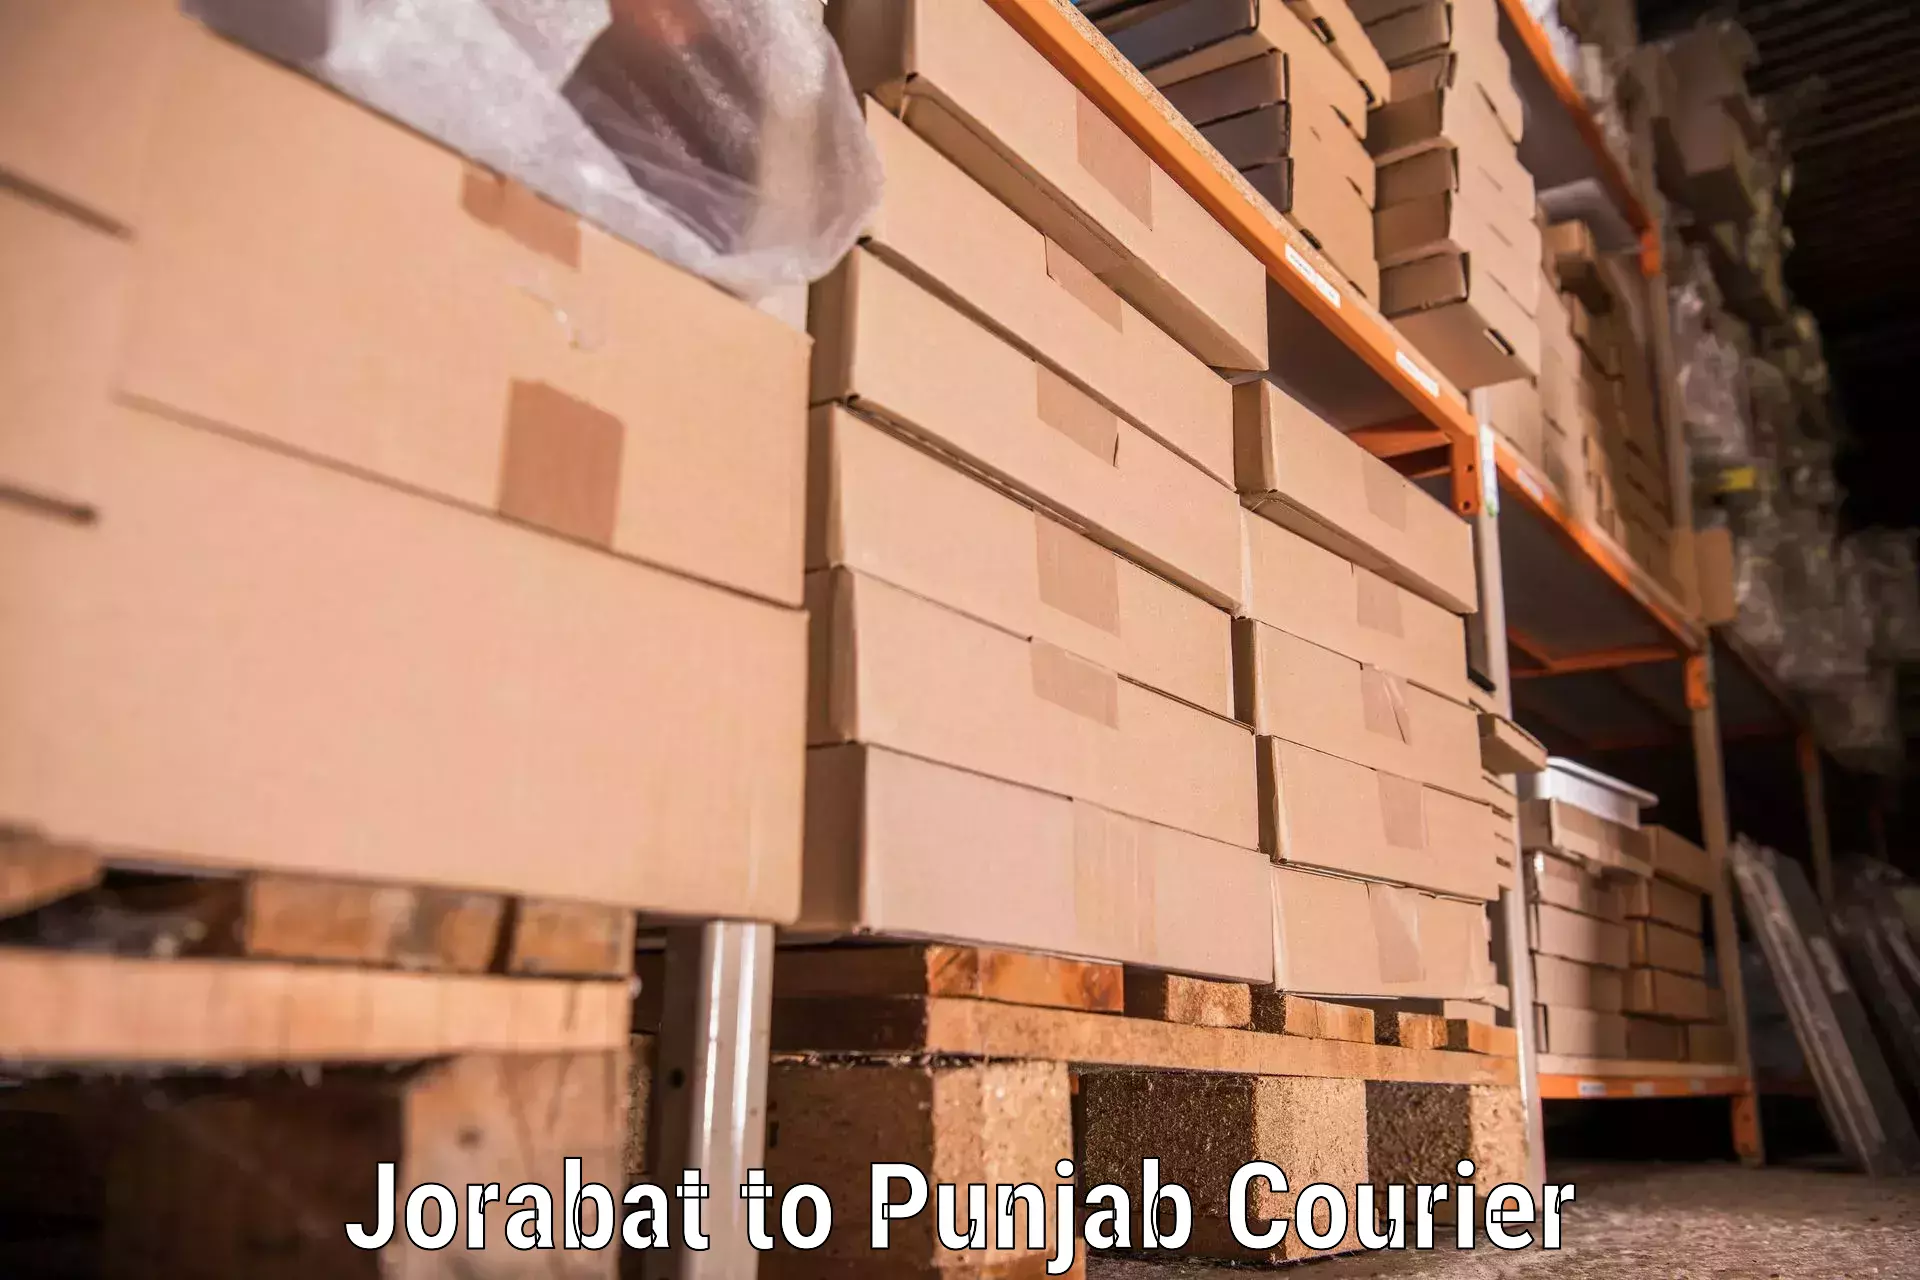 Furniture transport solutions in Jorabat to Punjab